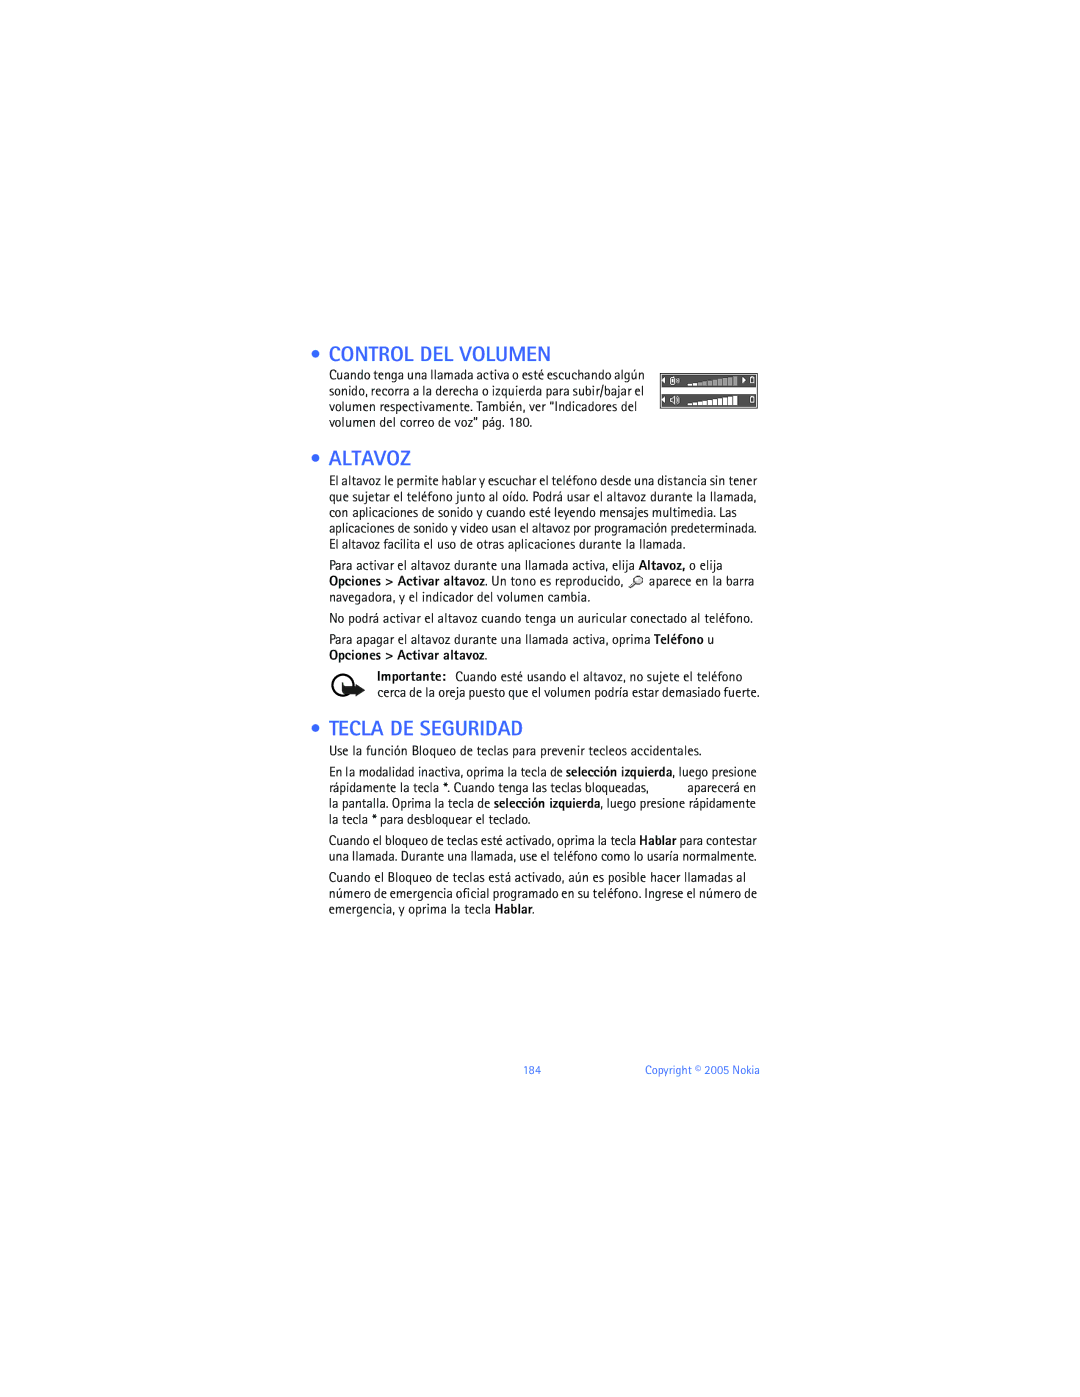 Nokia 6670 manual Control DEL Volumen, Altavoz, Tecla DE Seguridad 